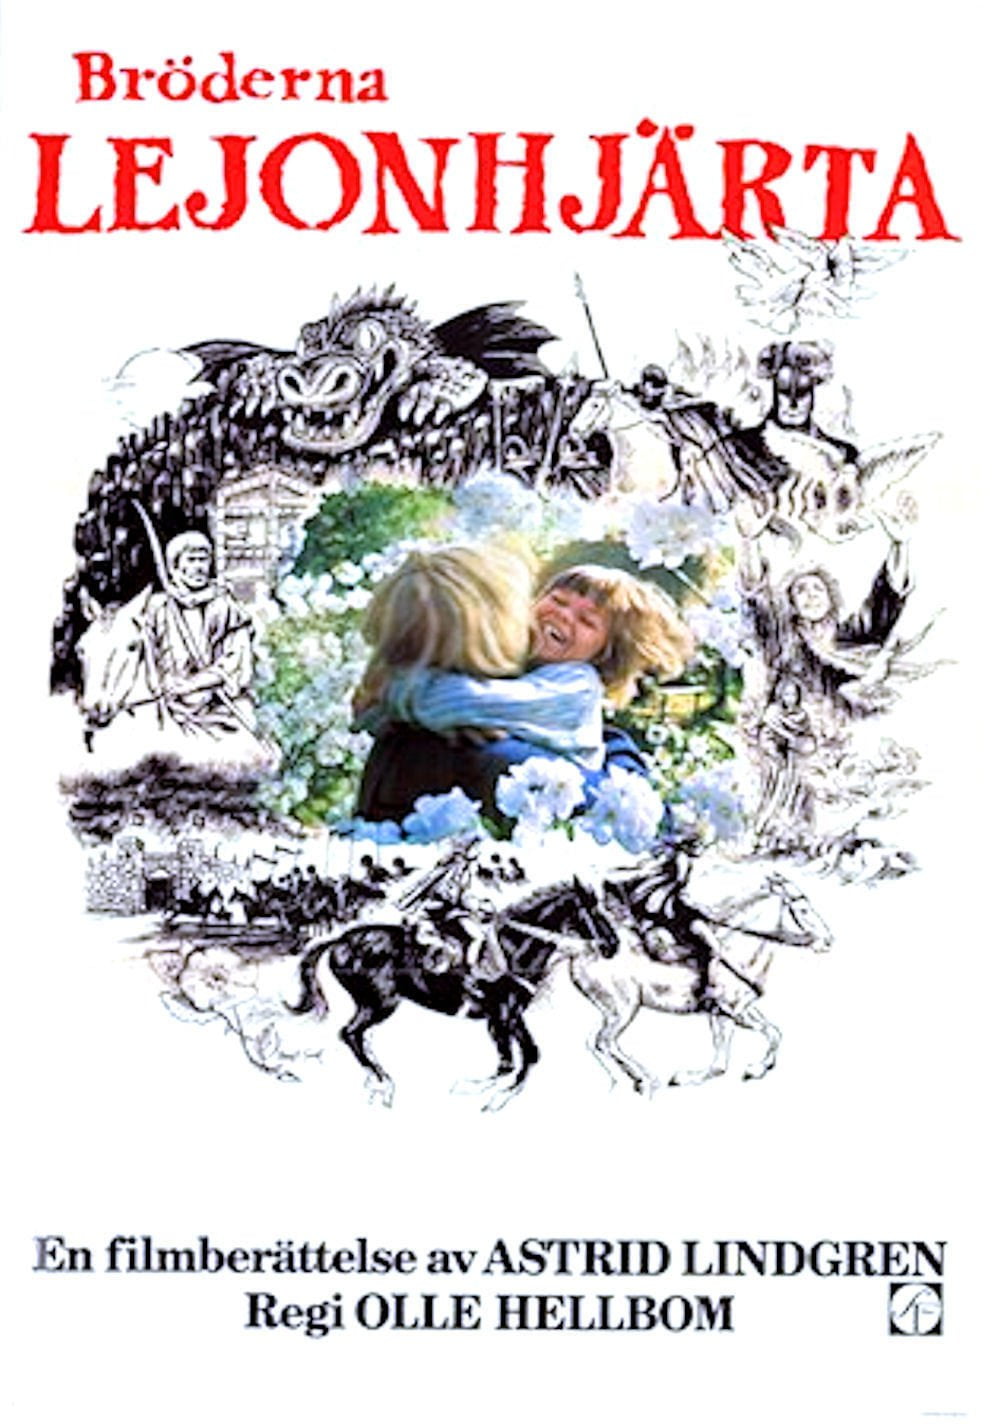 Poster for the filmen "Brødrene Løvehjerte"